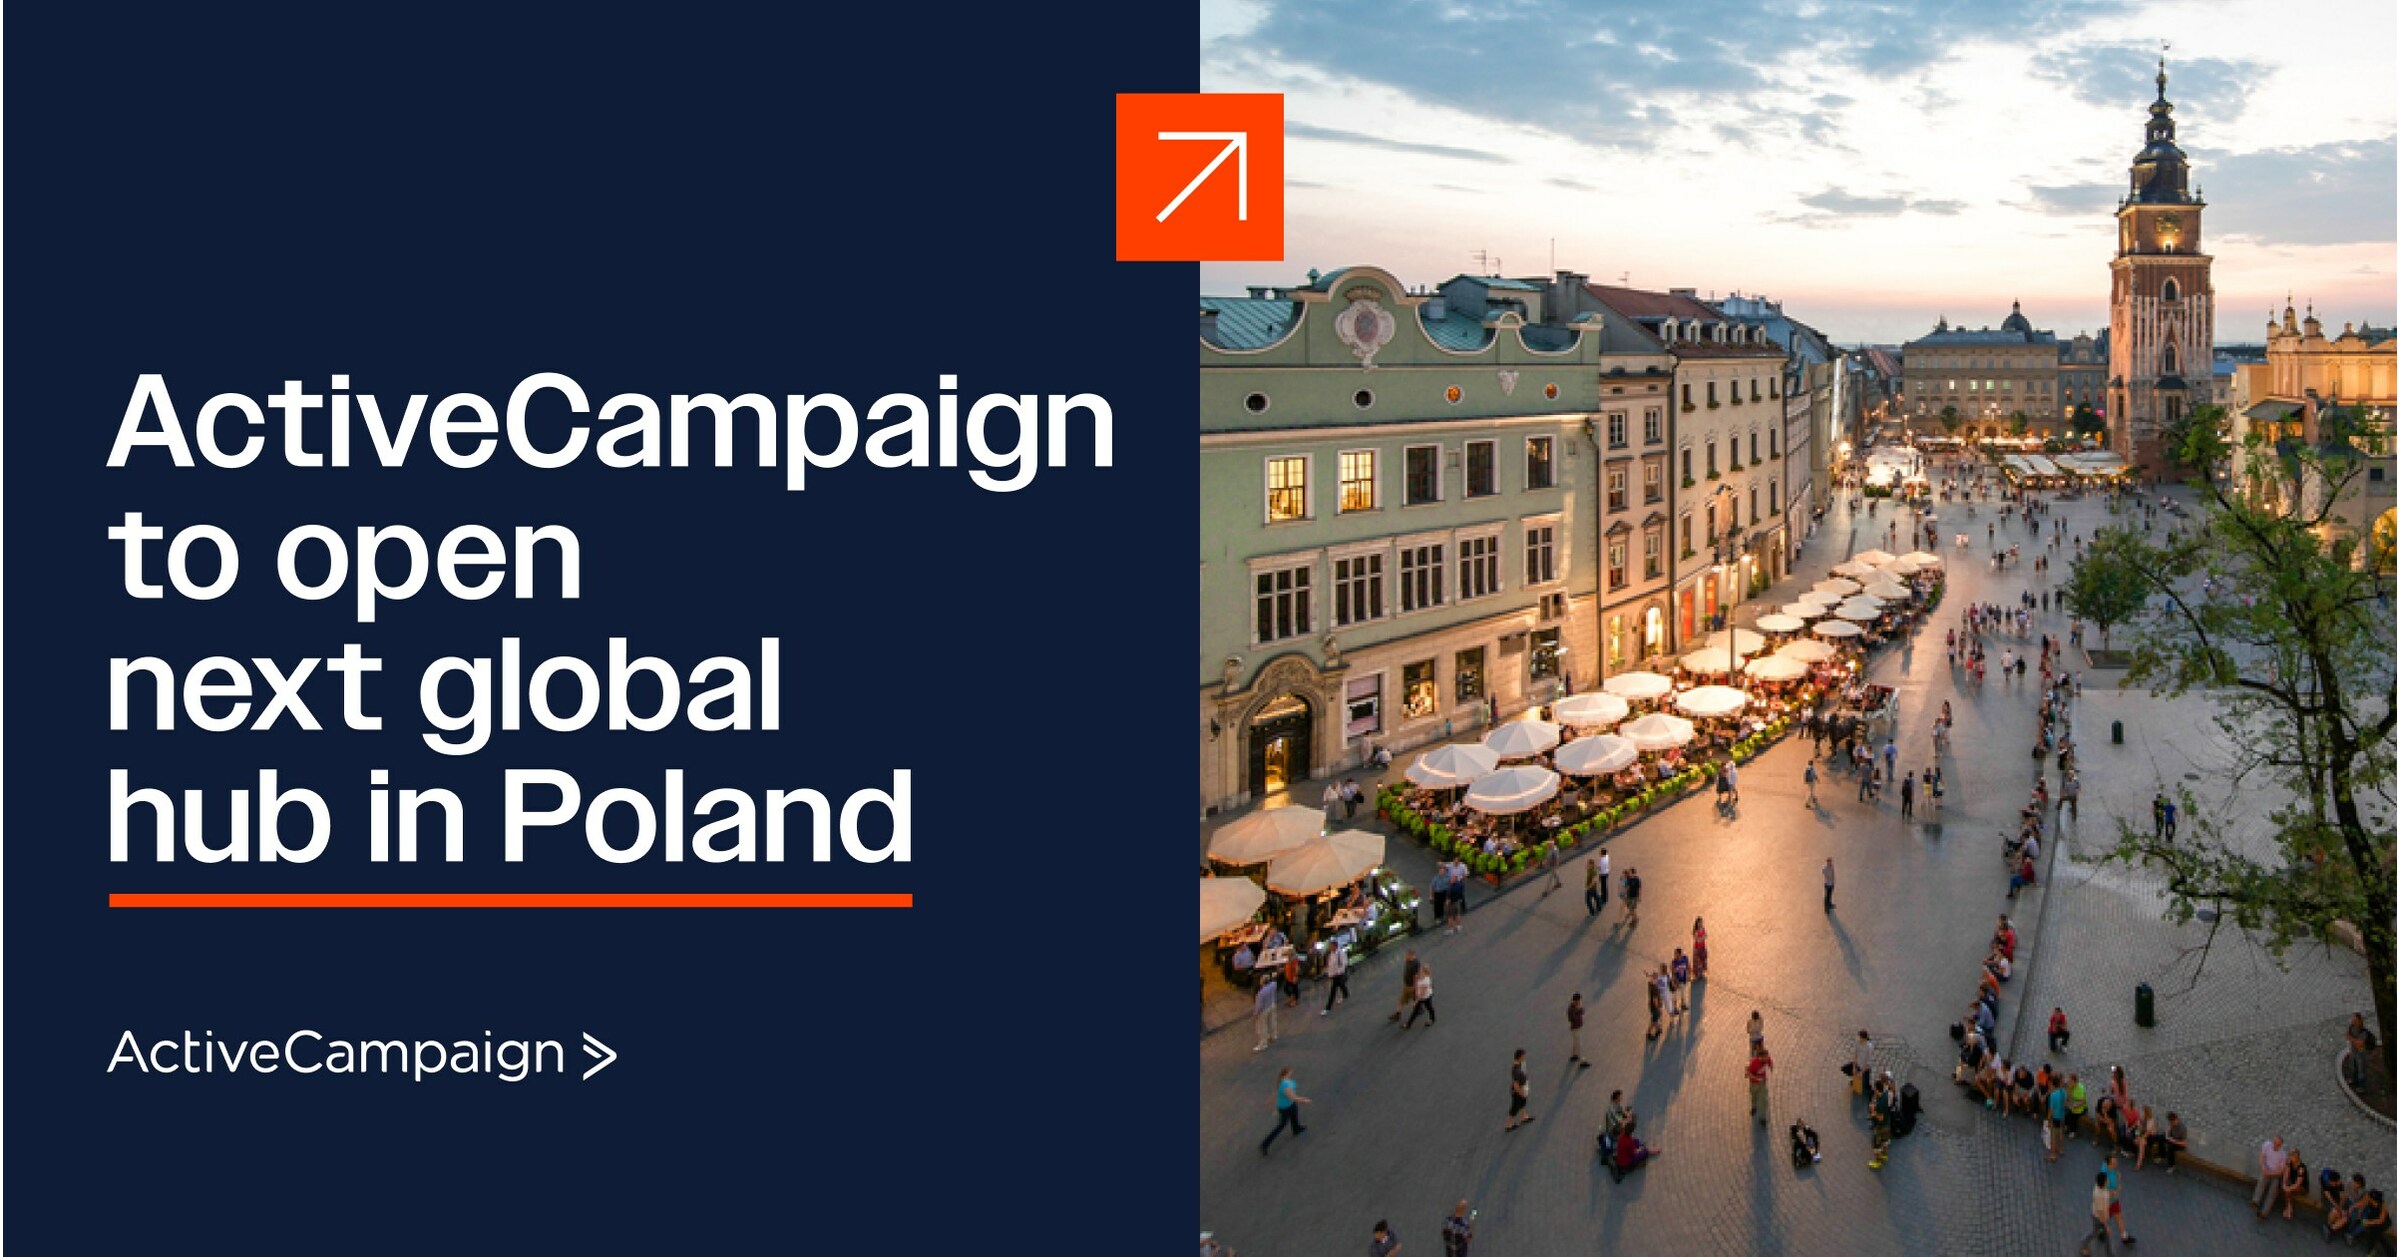 ActiveCampaign rozszerza globalny zasięg dzięki nowej siedzibie w Krakowie